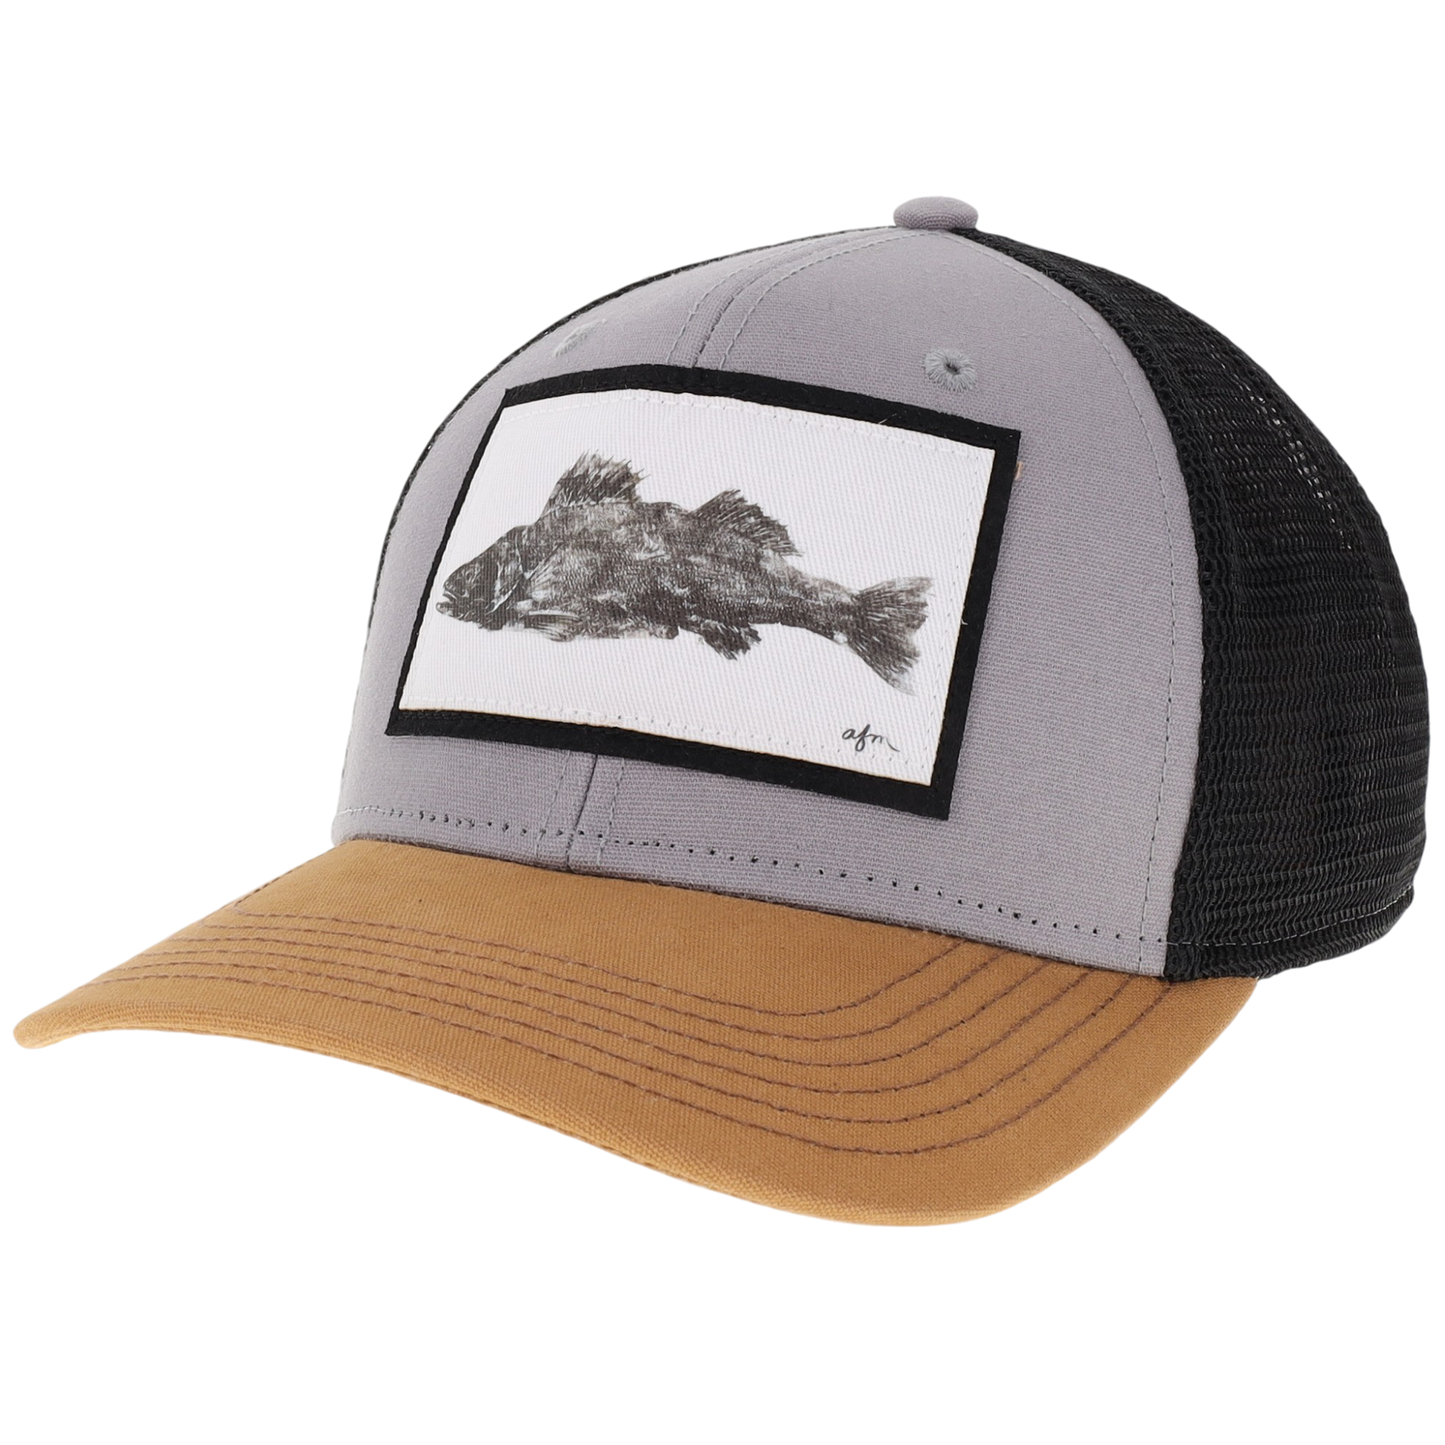 Walleye Gyotaku Mid-Pro Trucker Hat in Grey/Caramel/Black